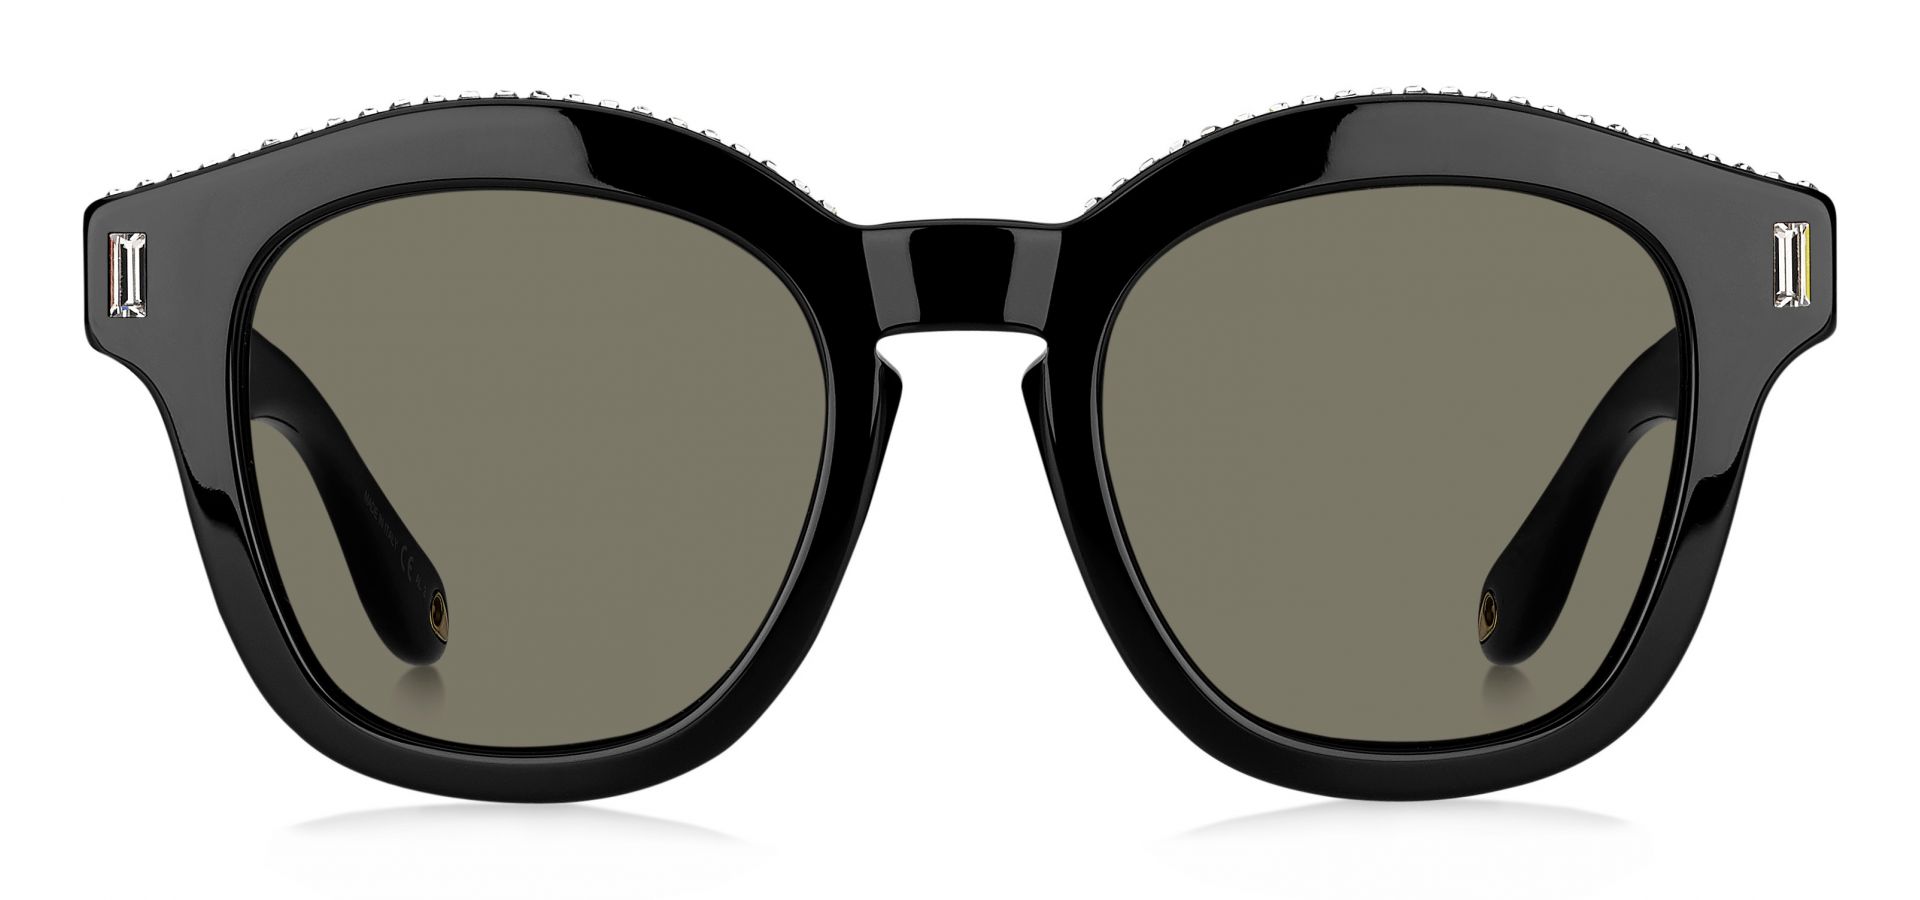 Sončna očala Givenchy GV7070: Velikost: 50/22/145, Spol: ženska, Material: acetat